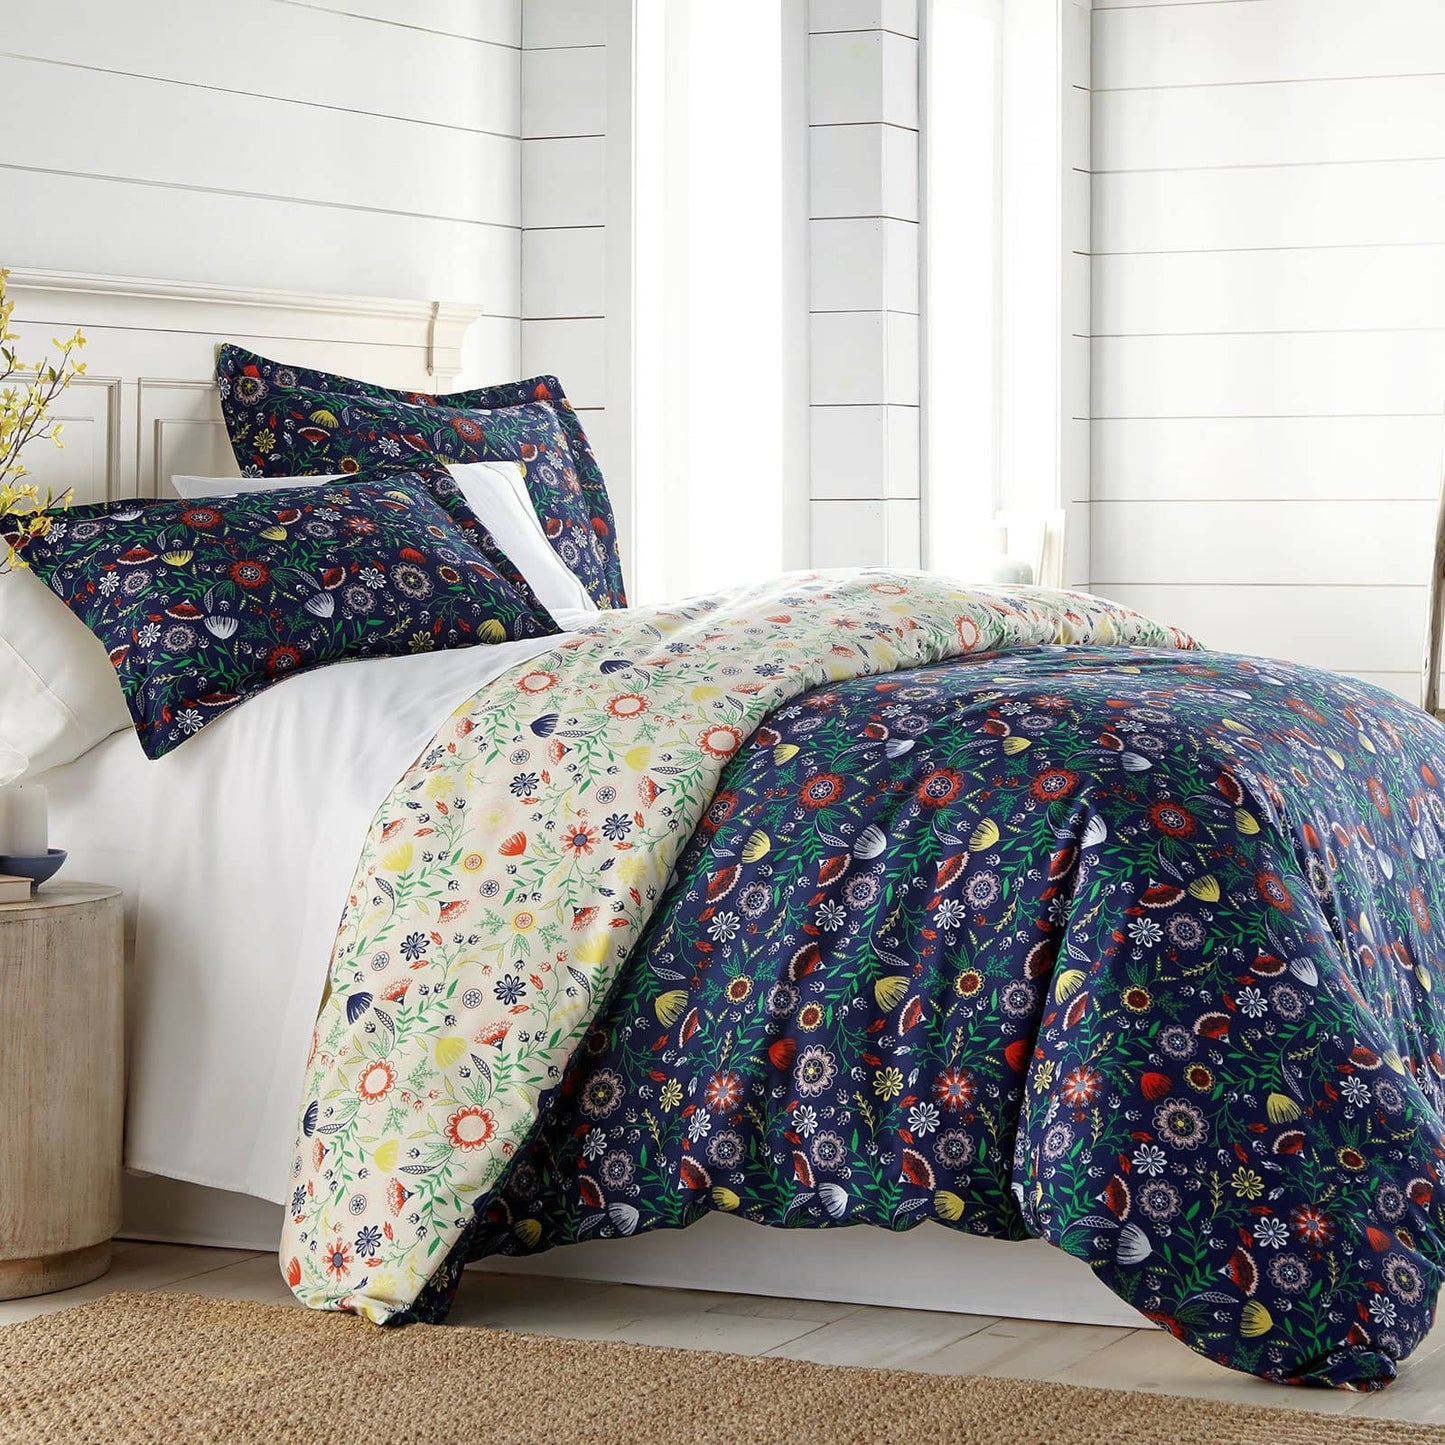 Claire's Garden Reversible Comforter Set